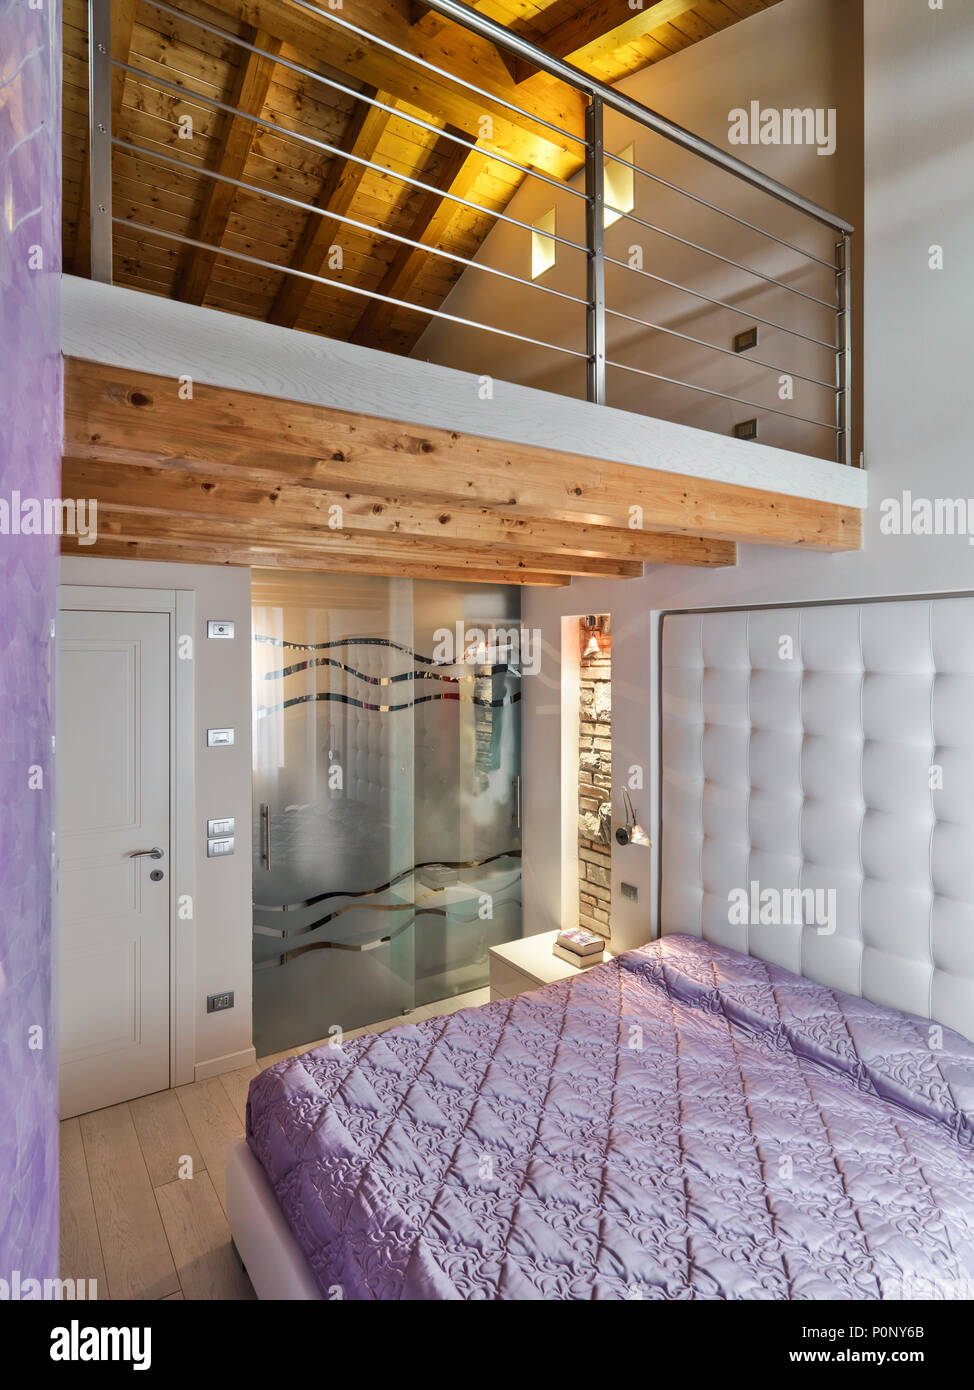 Moderno interiore camera da letto in mansarda camera con soppalco Foto Stock